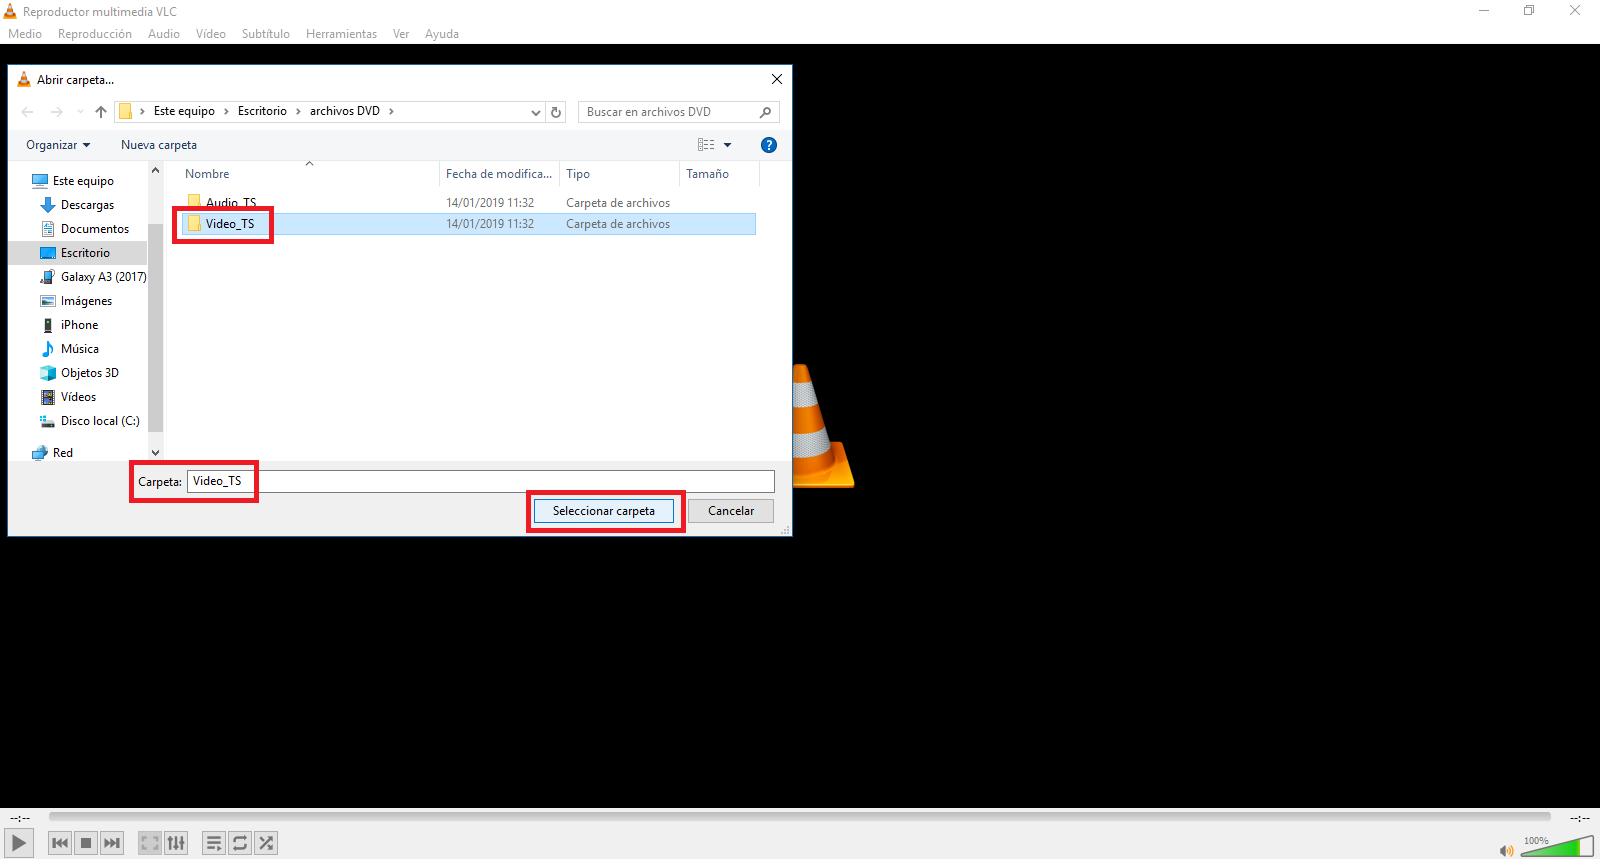 como abrir los archivos de video vob (video_TS) de DVd en Windows